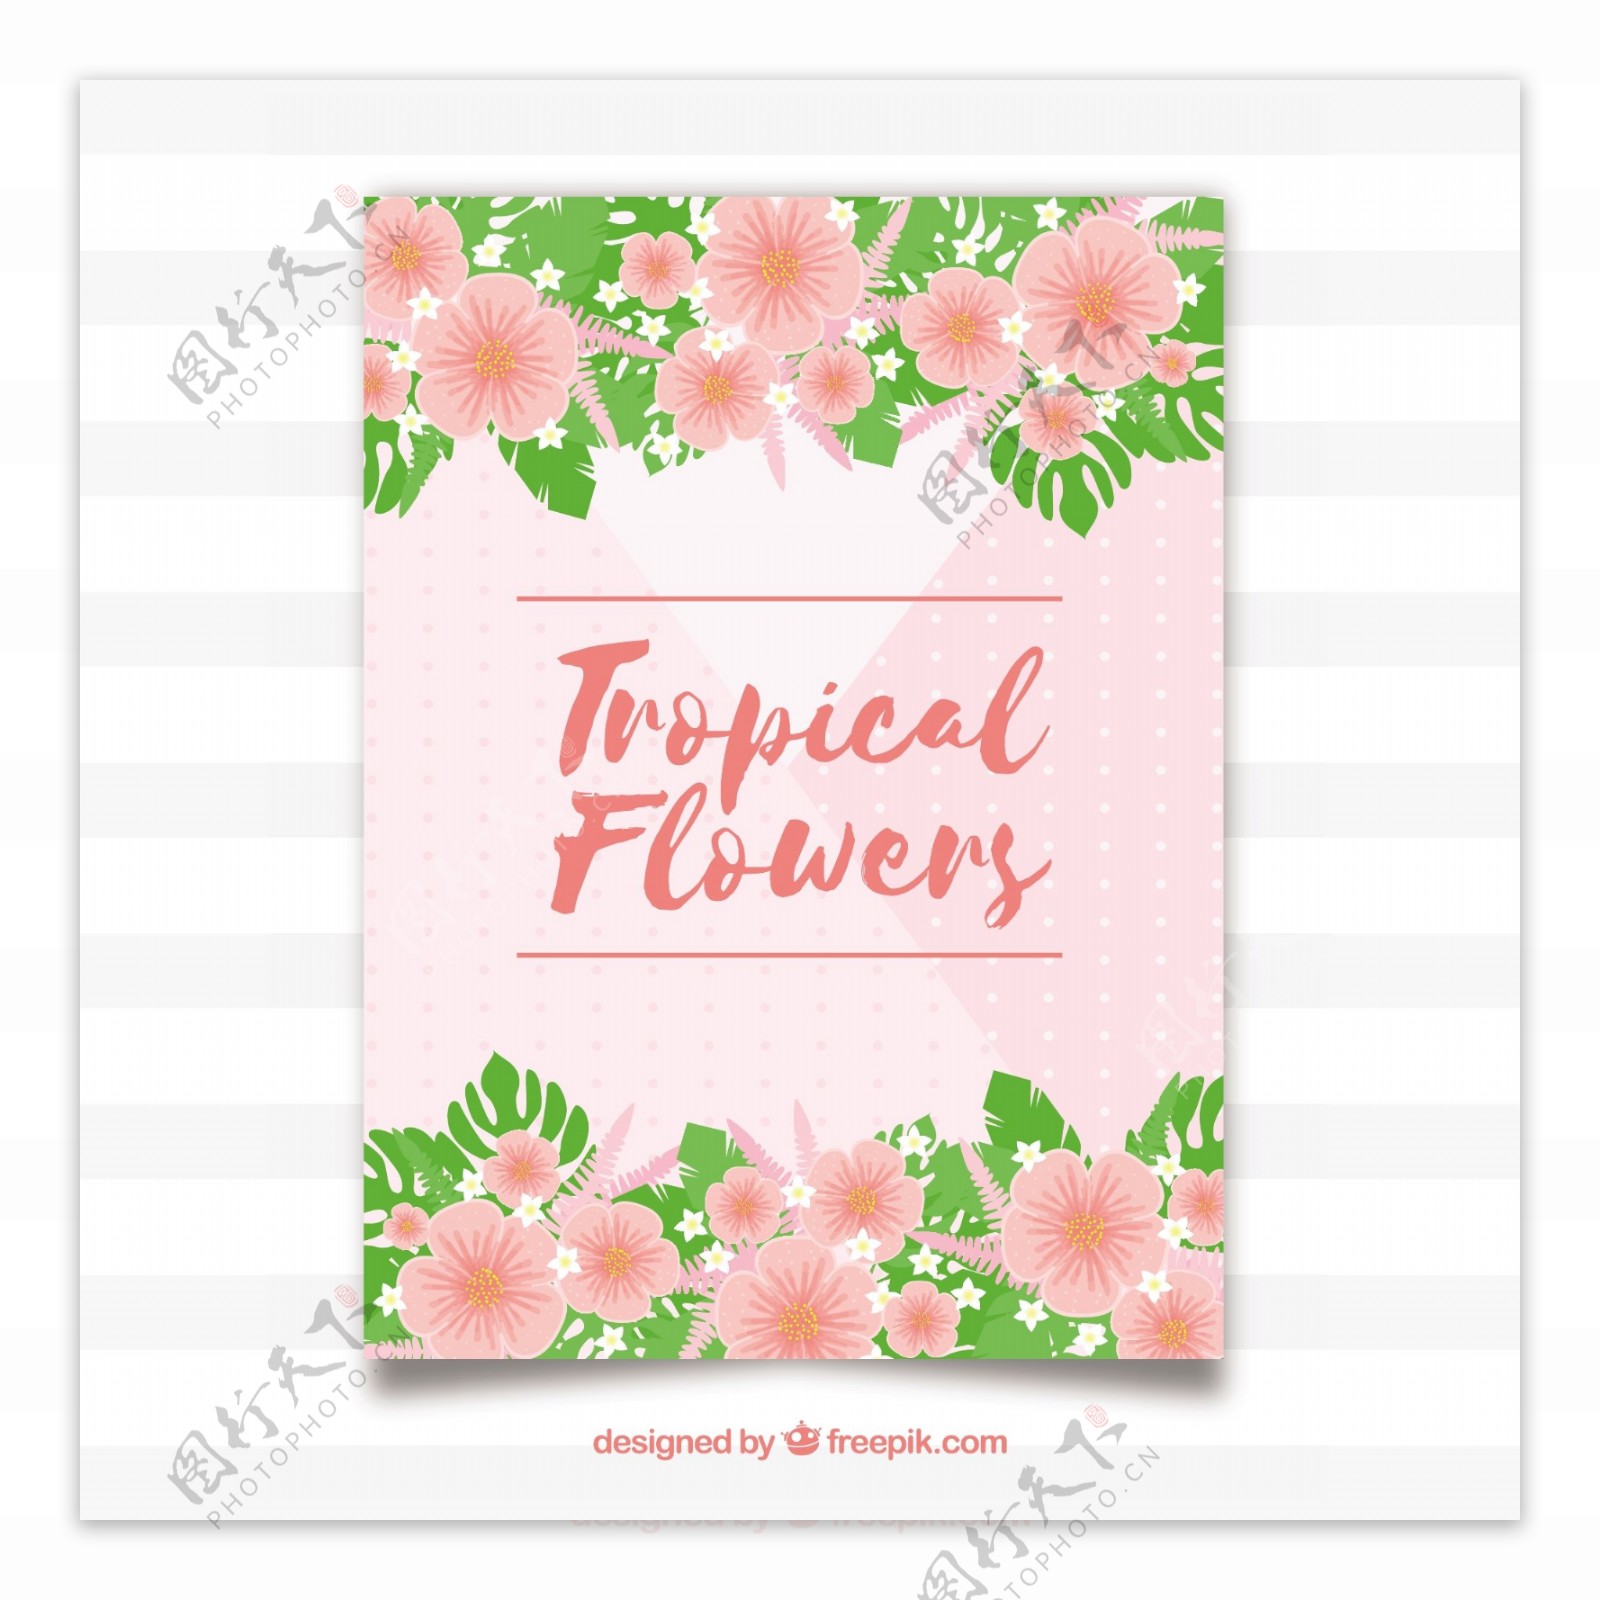 美丽的粉红色卡片与热带花卉